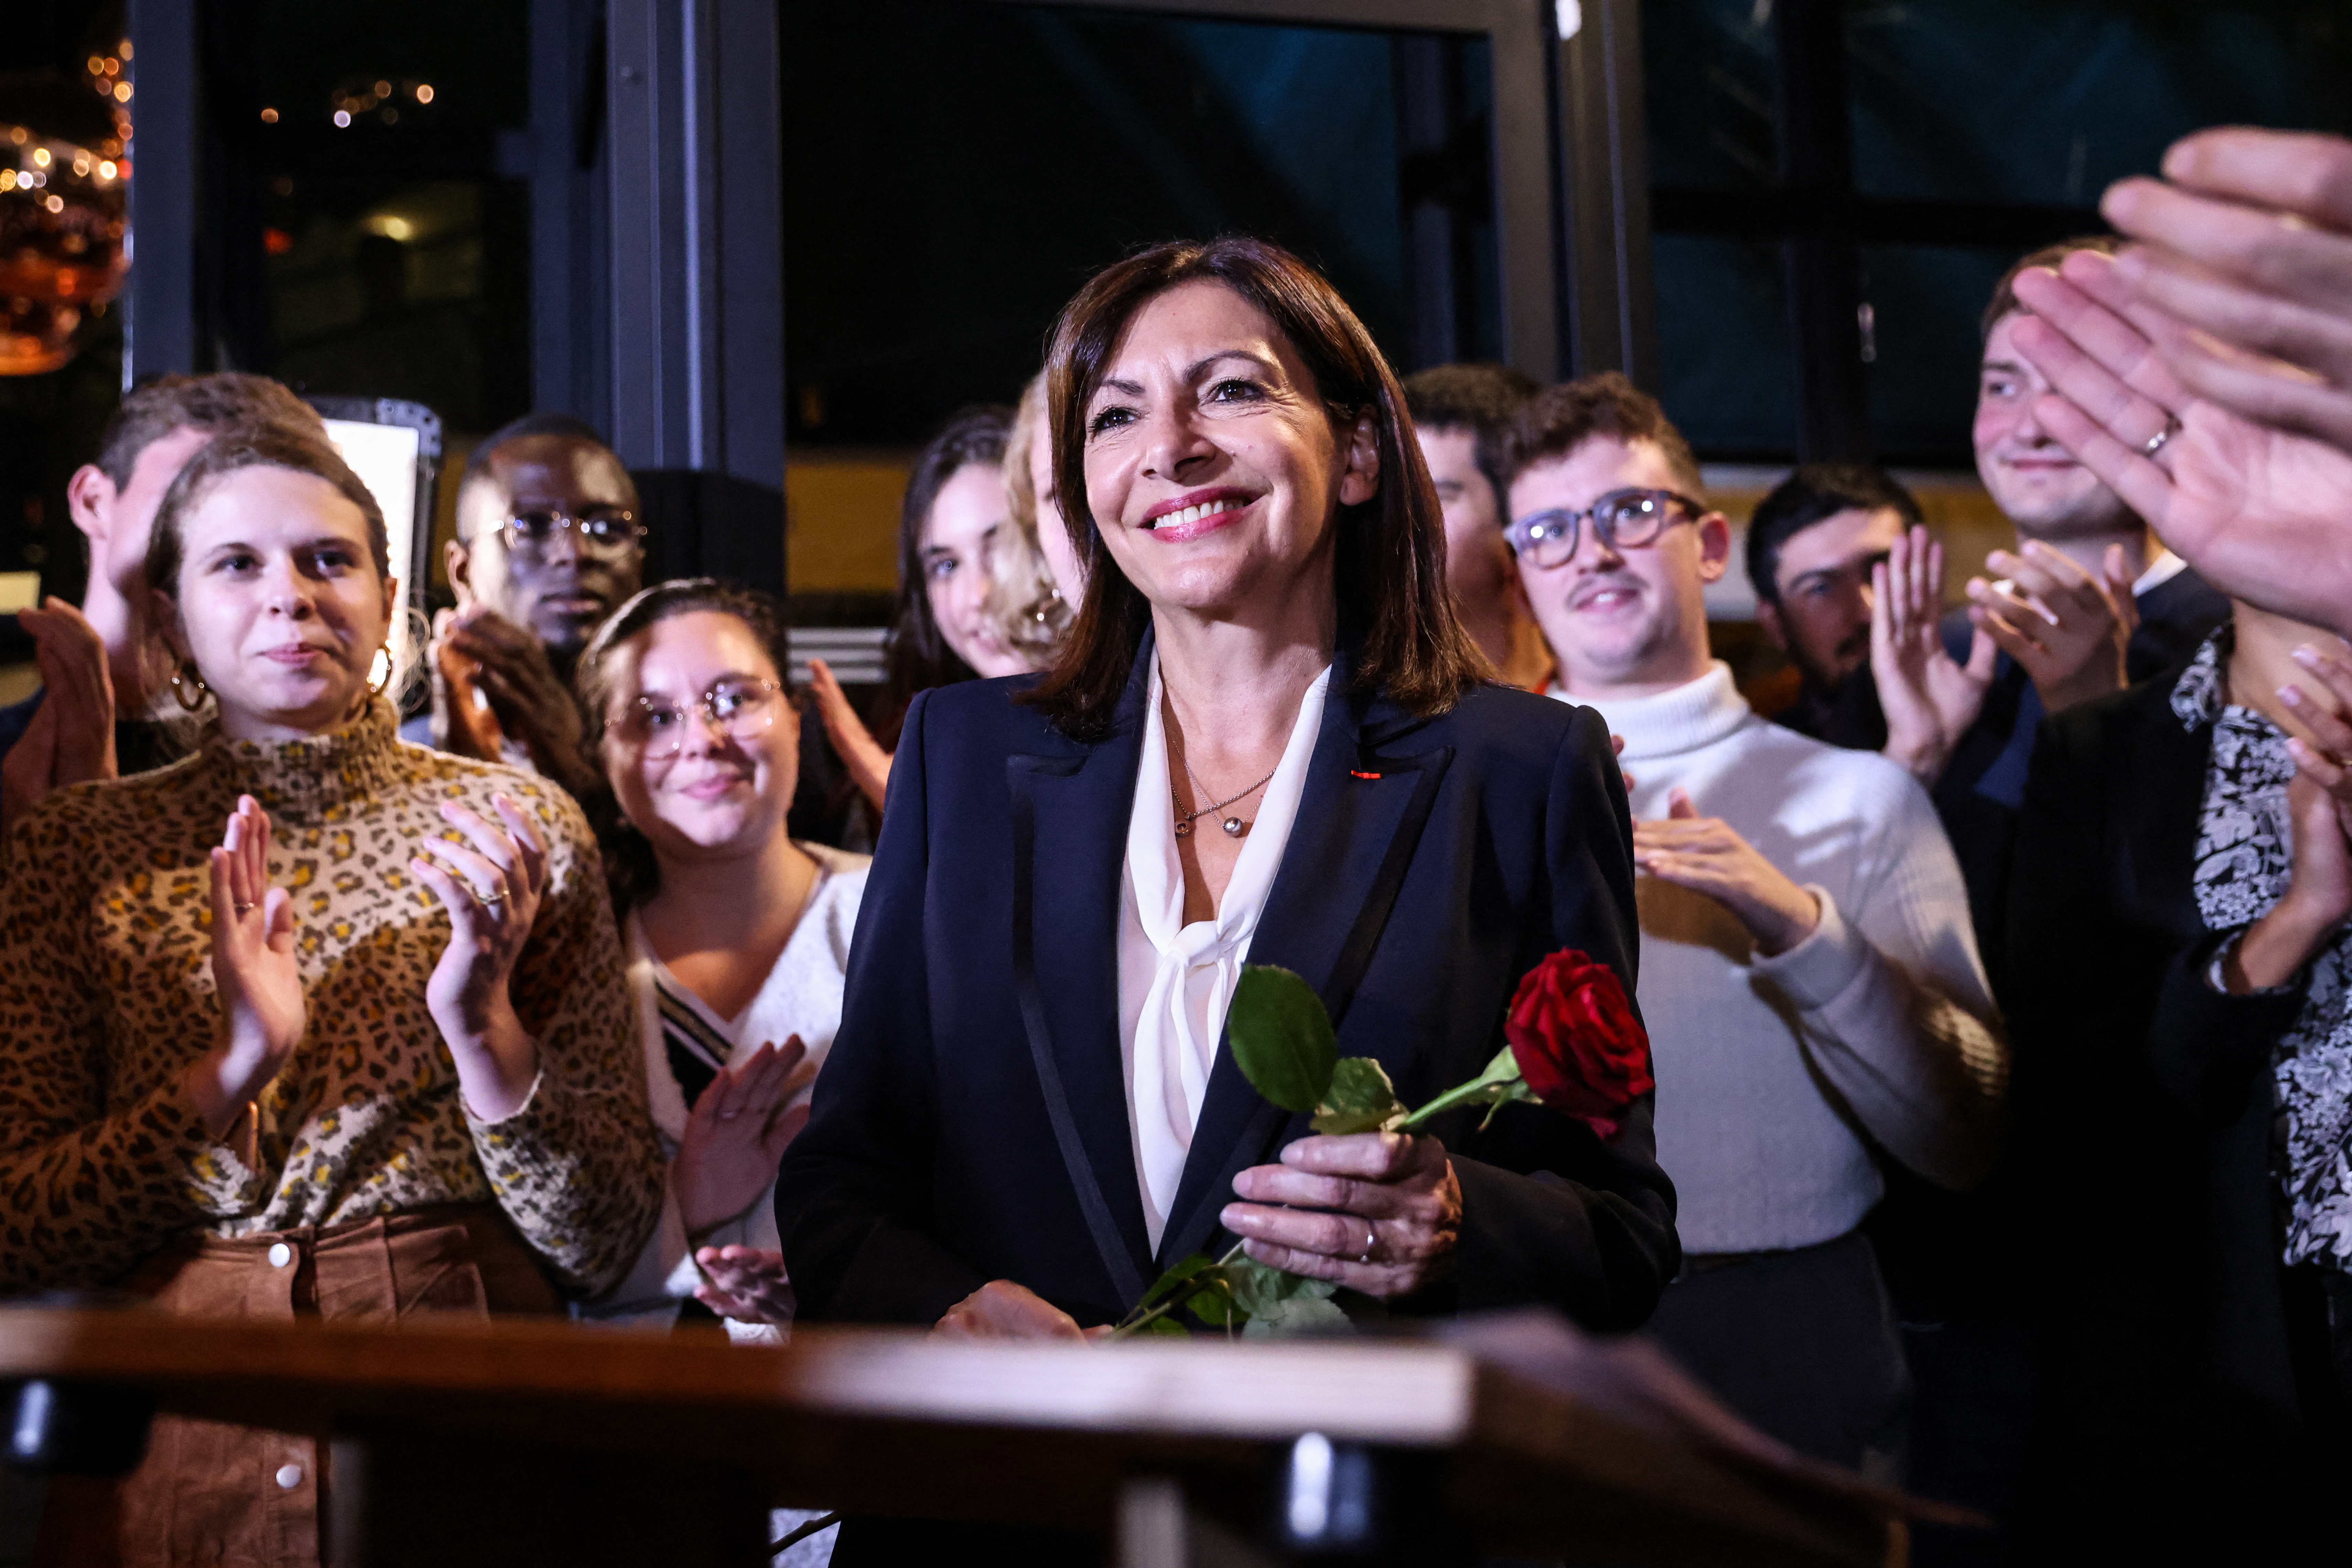 Párizs főpolgármestere, Anne Hidalgo indul a francia elnökválasztáson